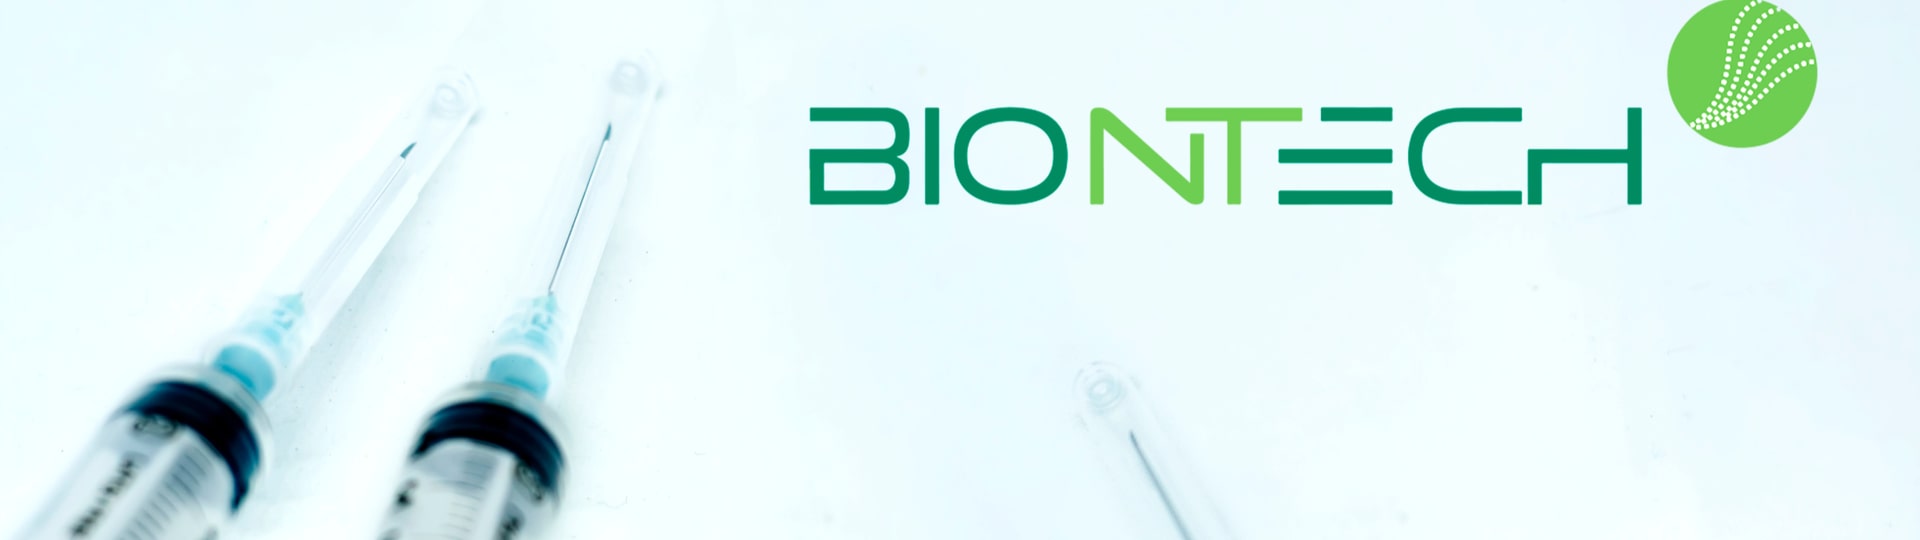 BioNTech ztrojnásobil zisk na 3,7 miliardy eur